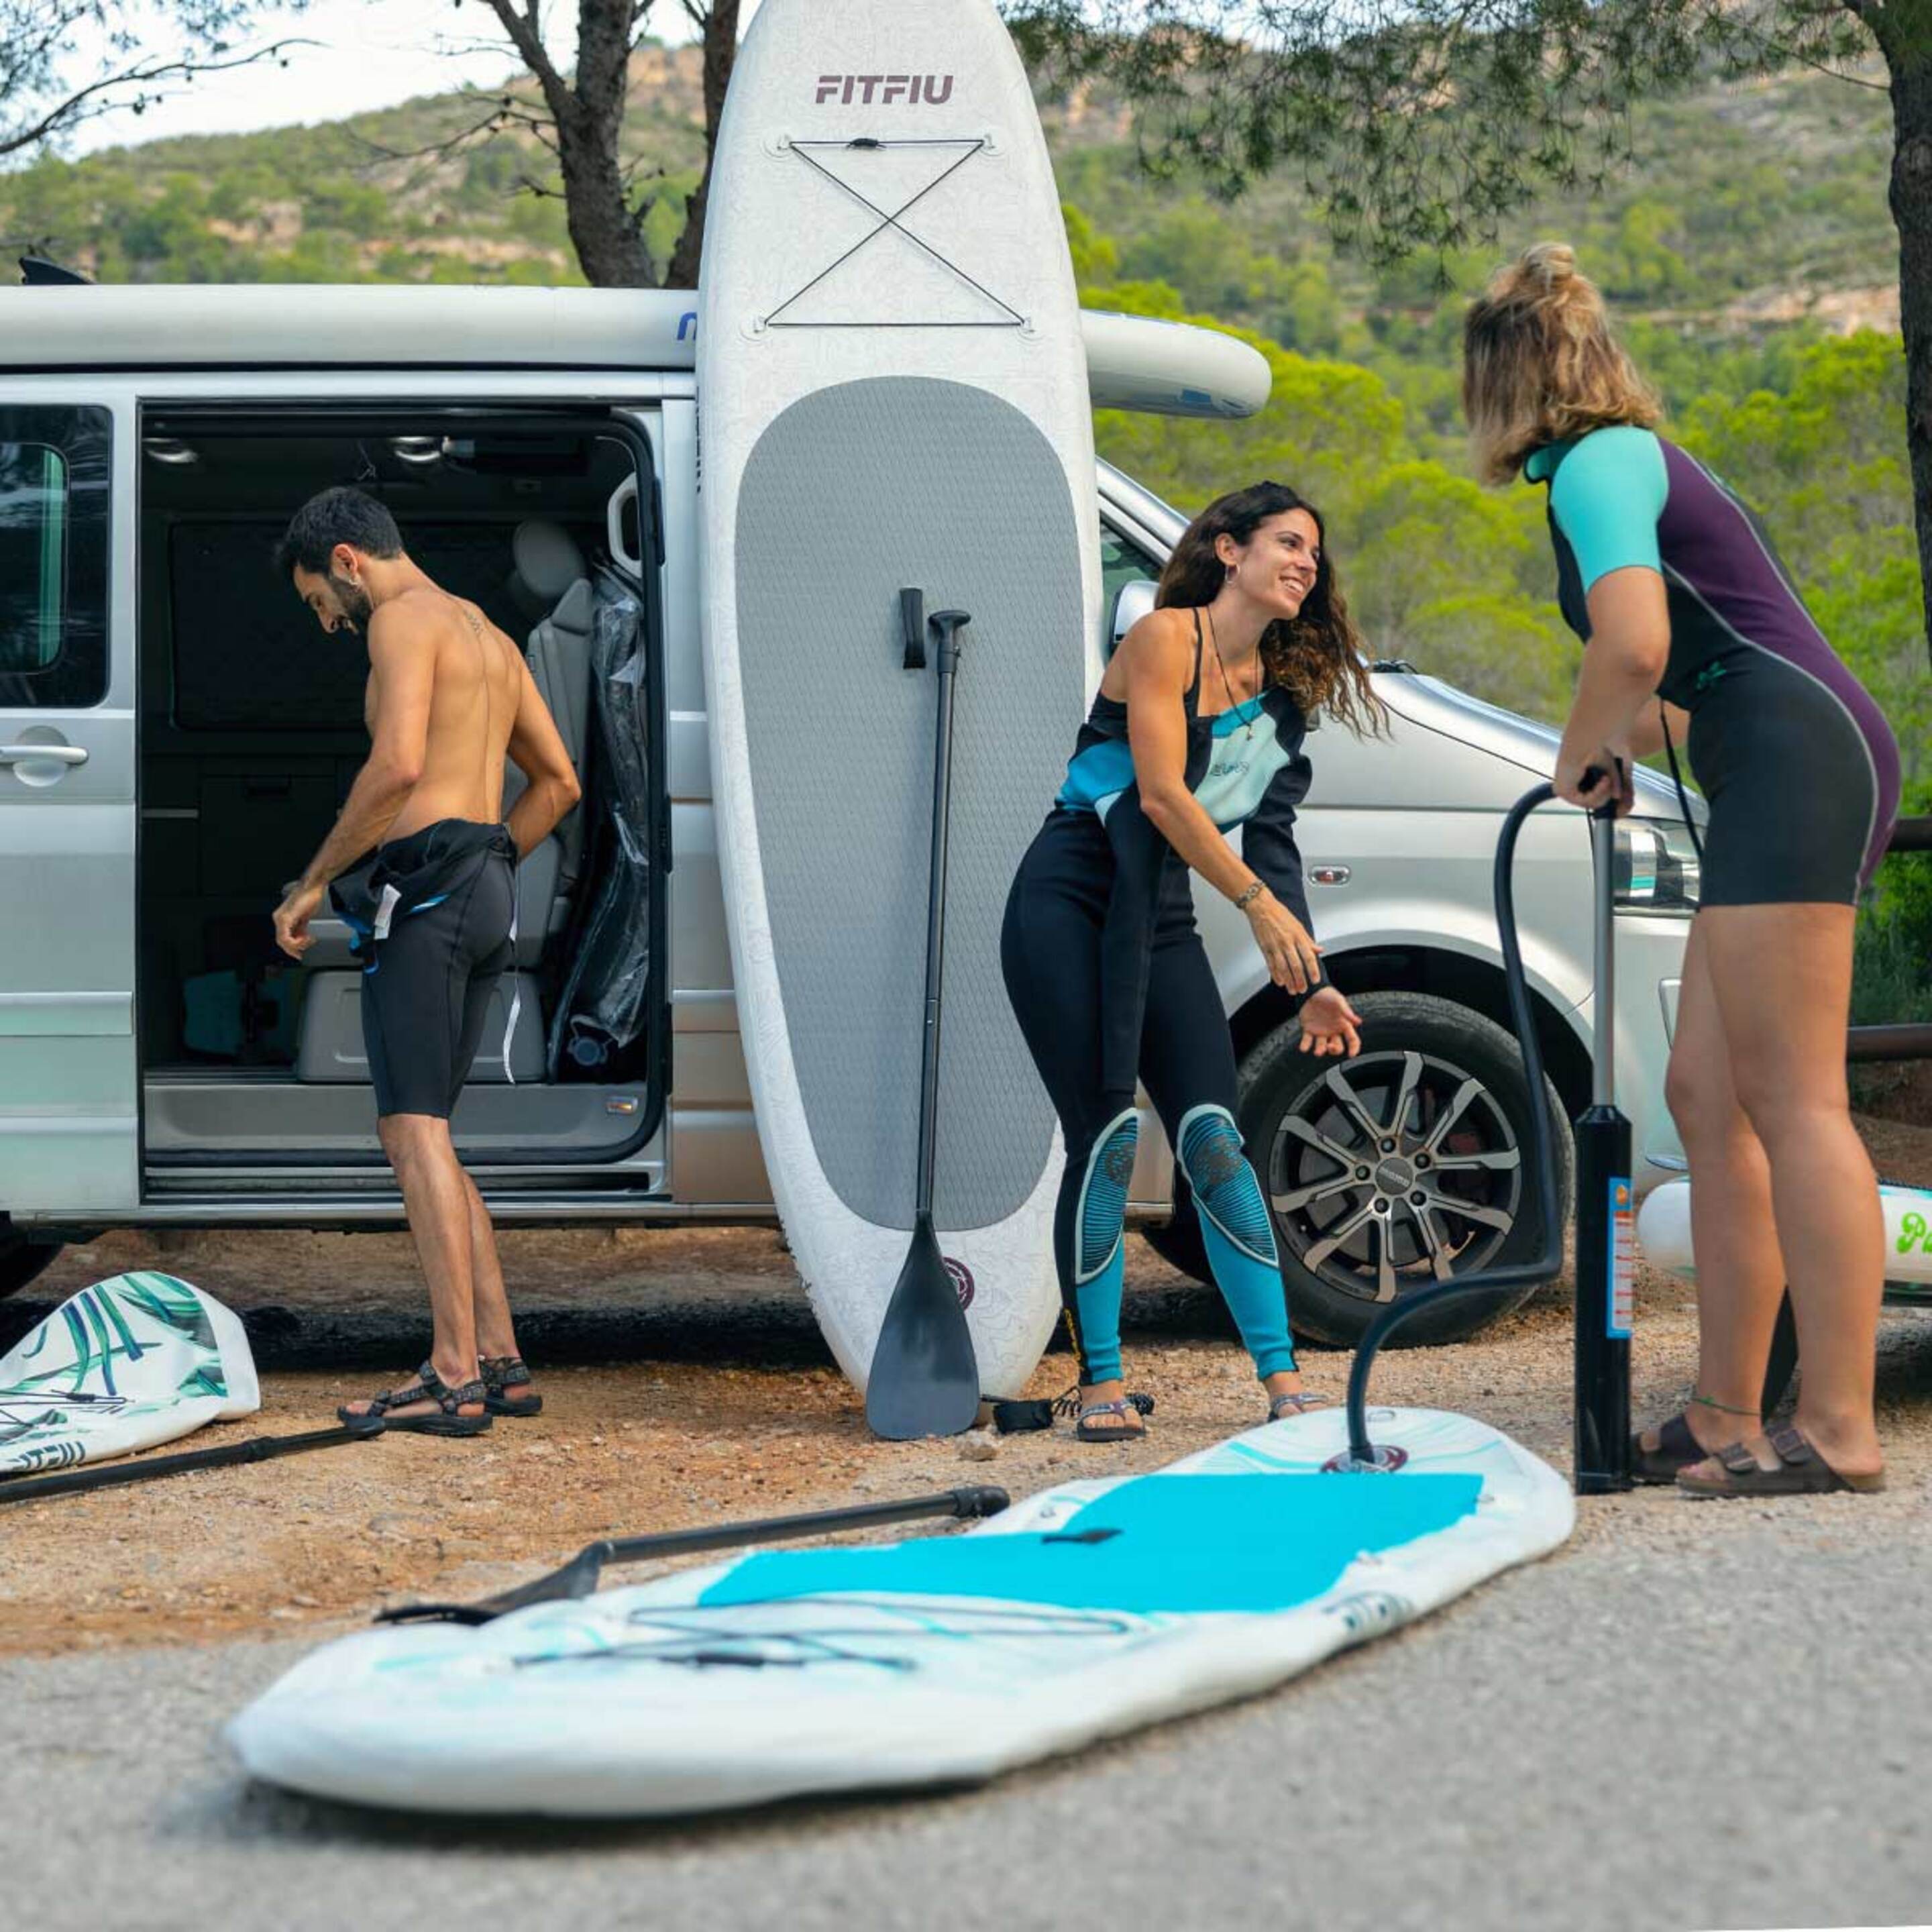 Tabla Paddle Surf All Round Hinchable Fitfiu Con Accesorios Y Diseño Marino - Azul Marino - Tabla SUP  MKP